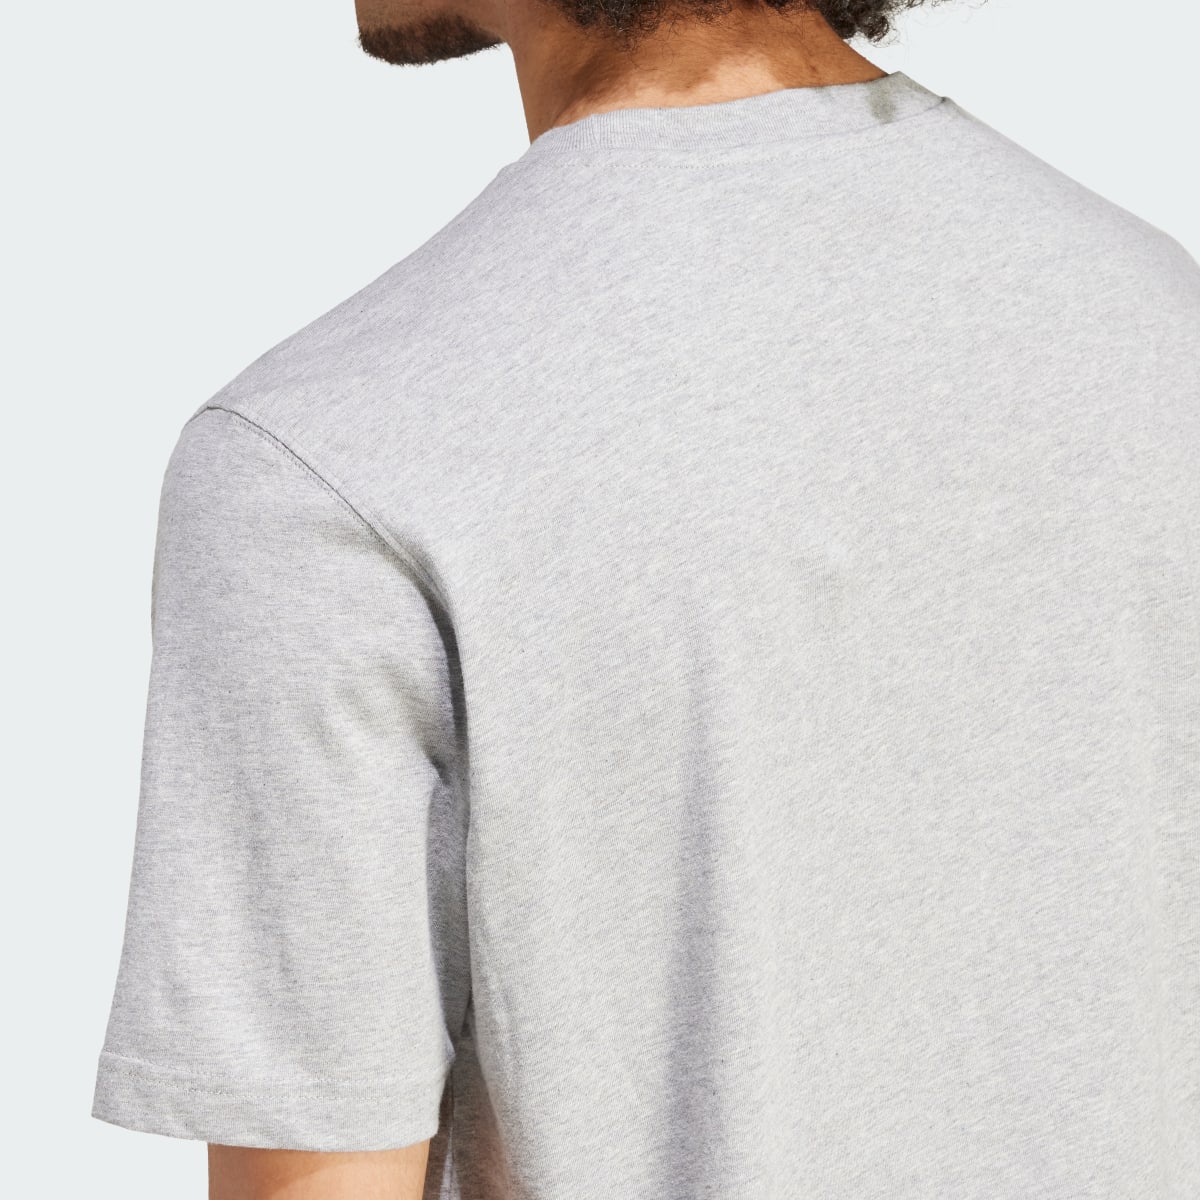 Adidas Camiseta Trefoil Essentials. 7